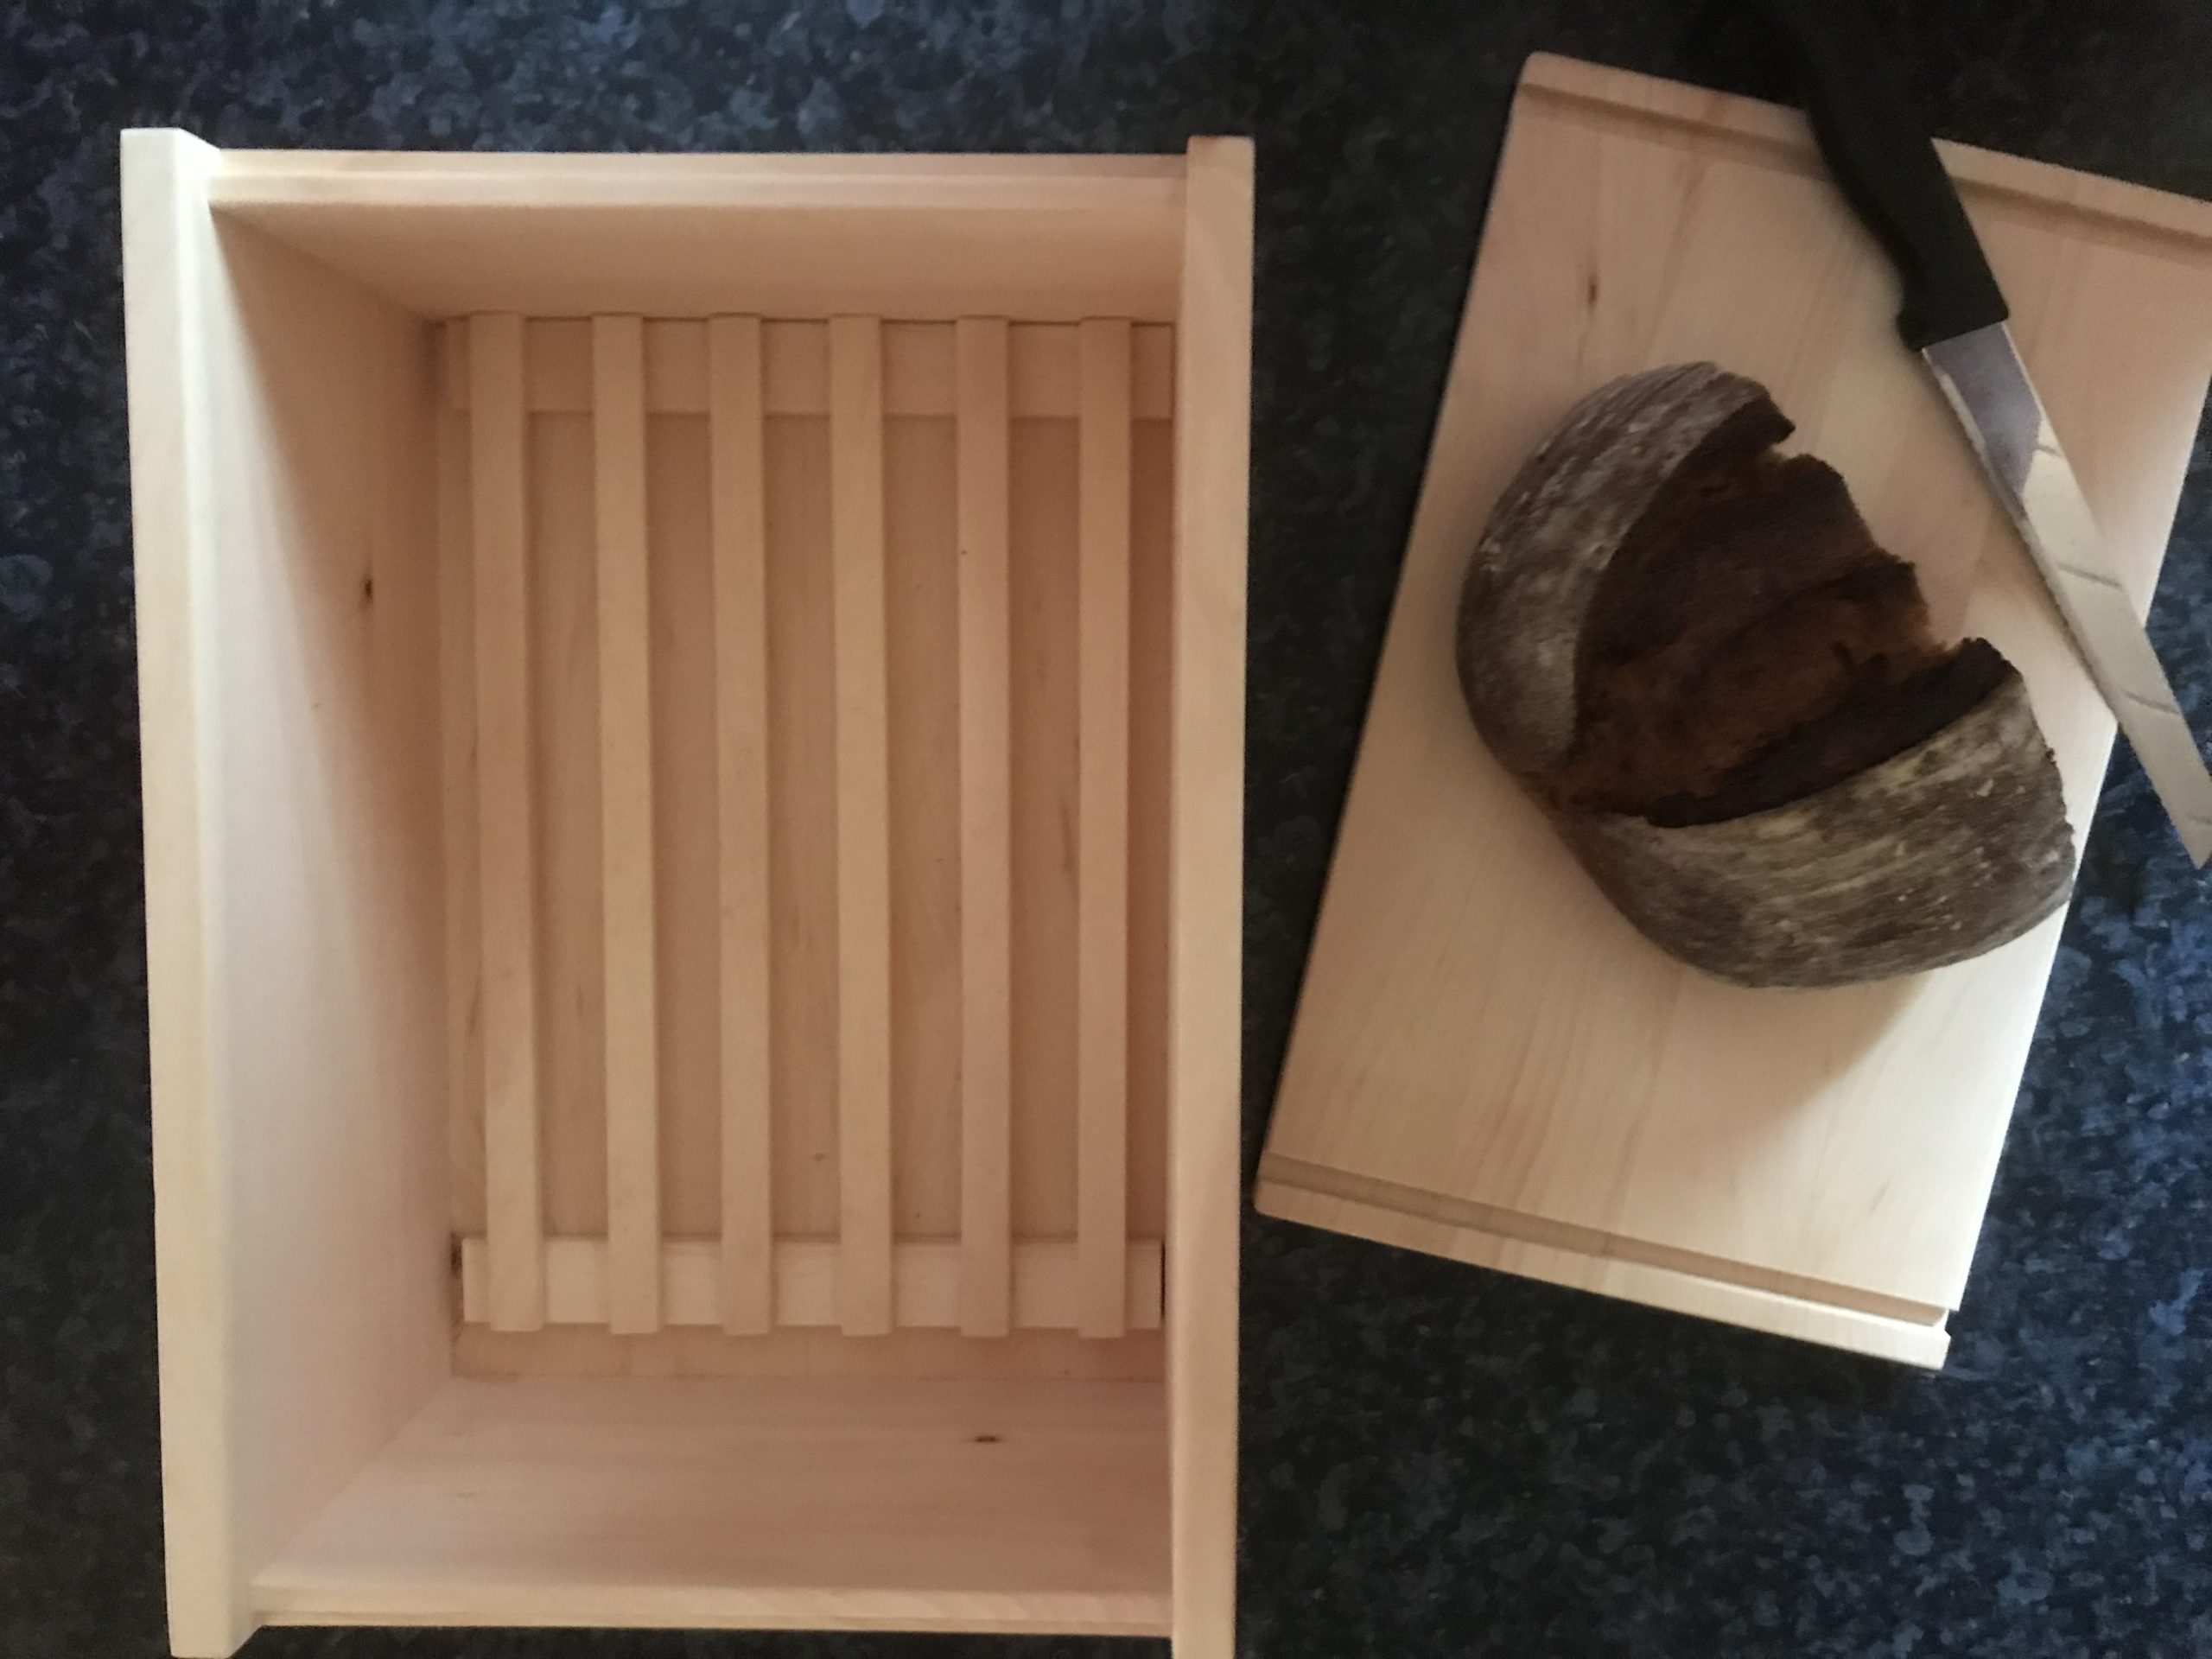 Zirbenholz Kiste mit Zirbenholz Brett mit Brot und Messer